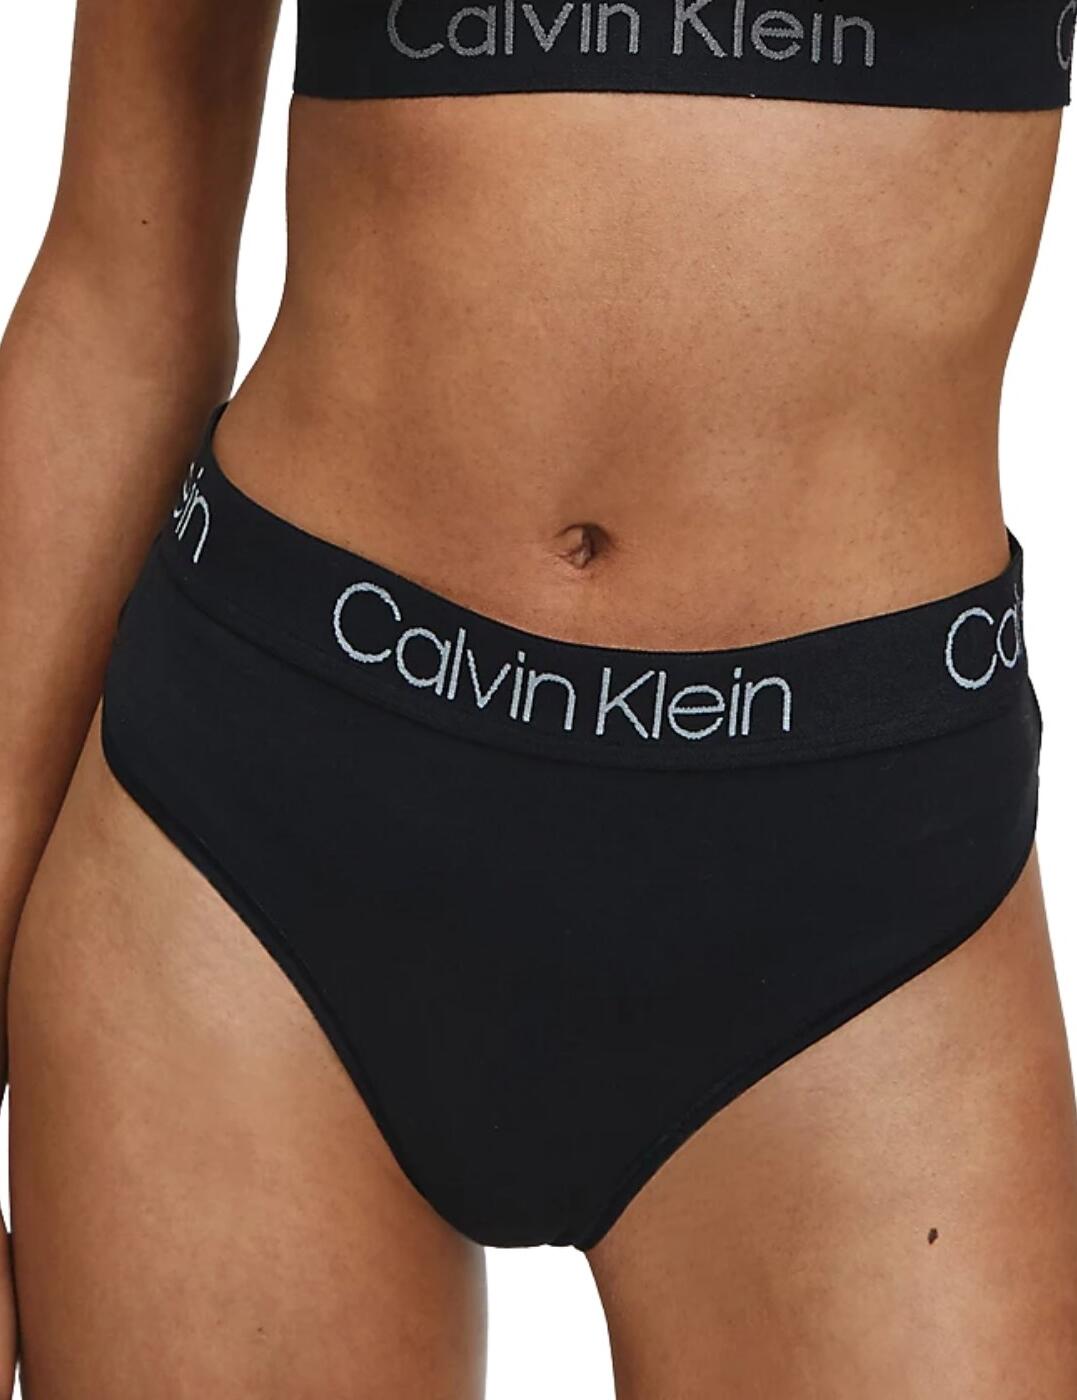 000QD3754E Calvin Klein Body Cotton High Waist Thong - QD3754E Black